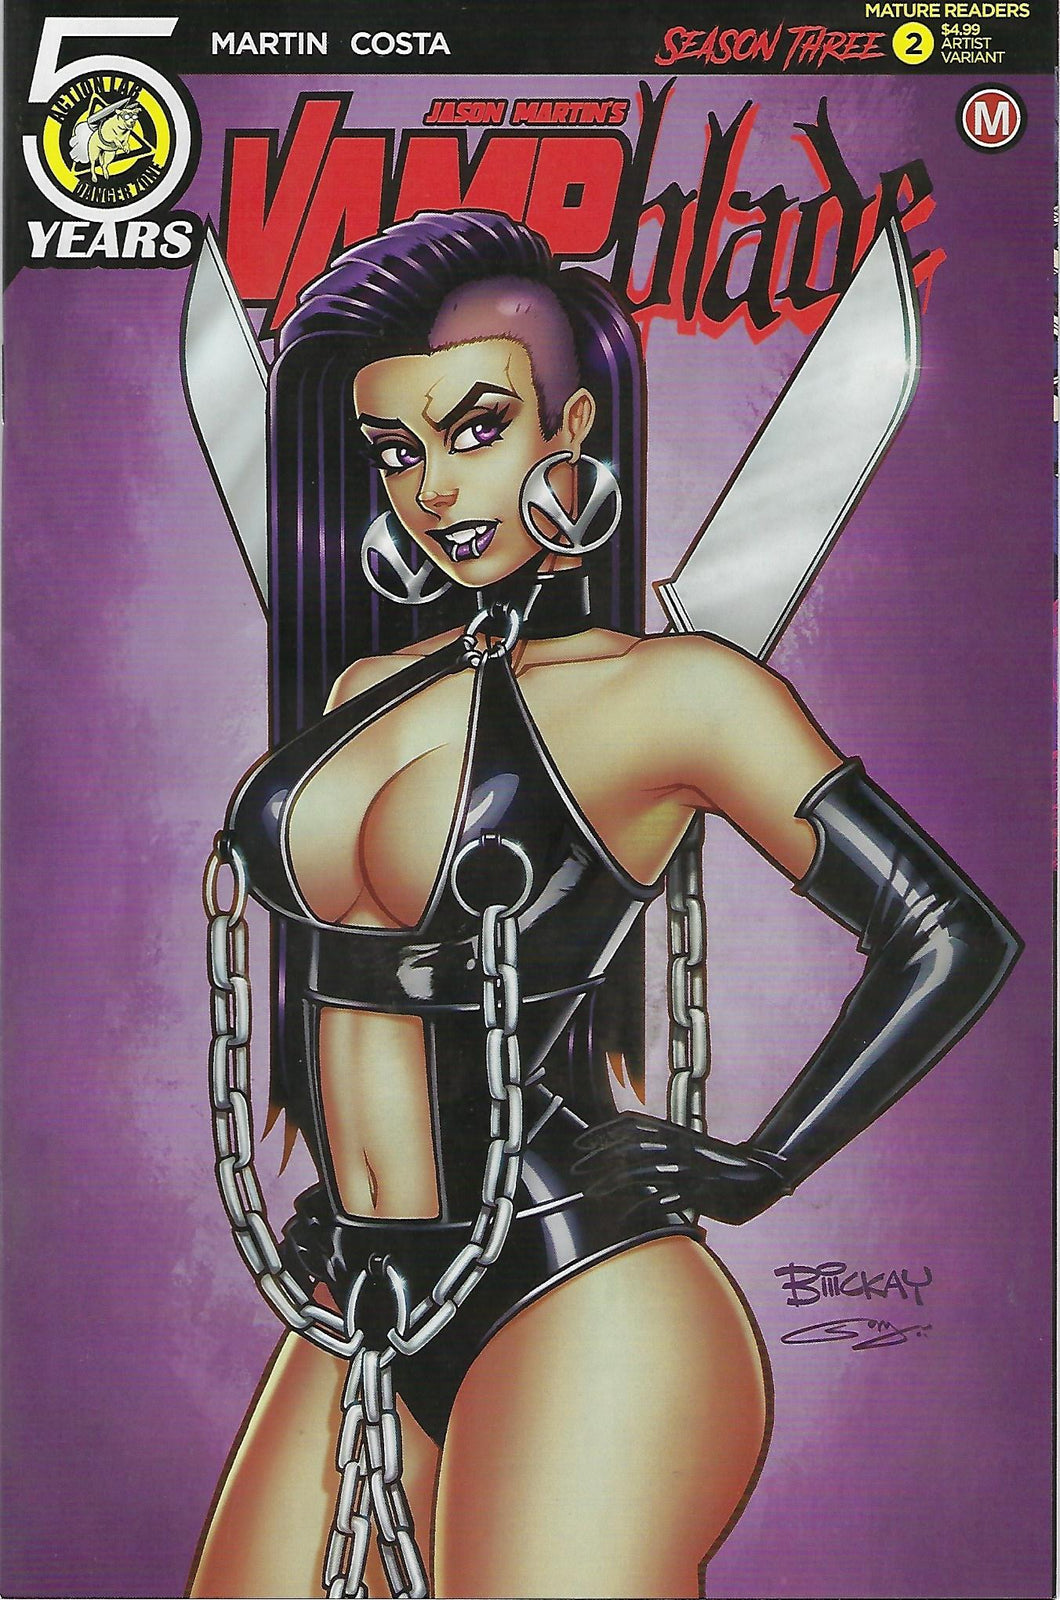 Vampblade # 2 Bill McKay Artist Variant Cover !!!  NM